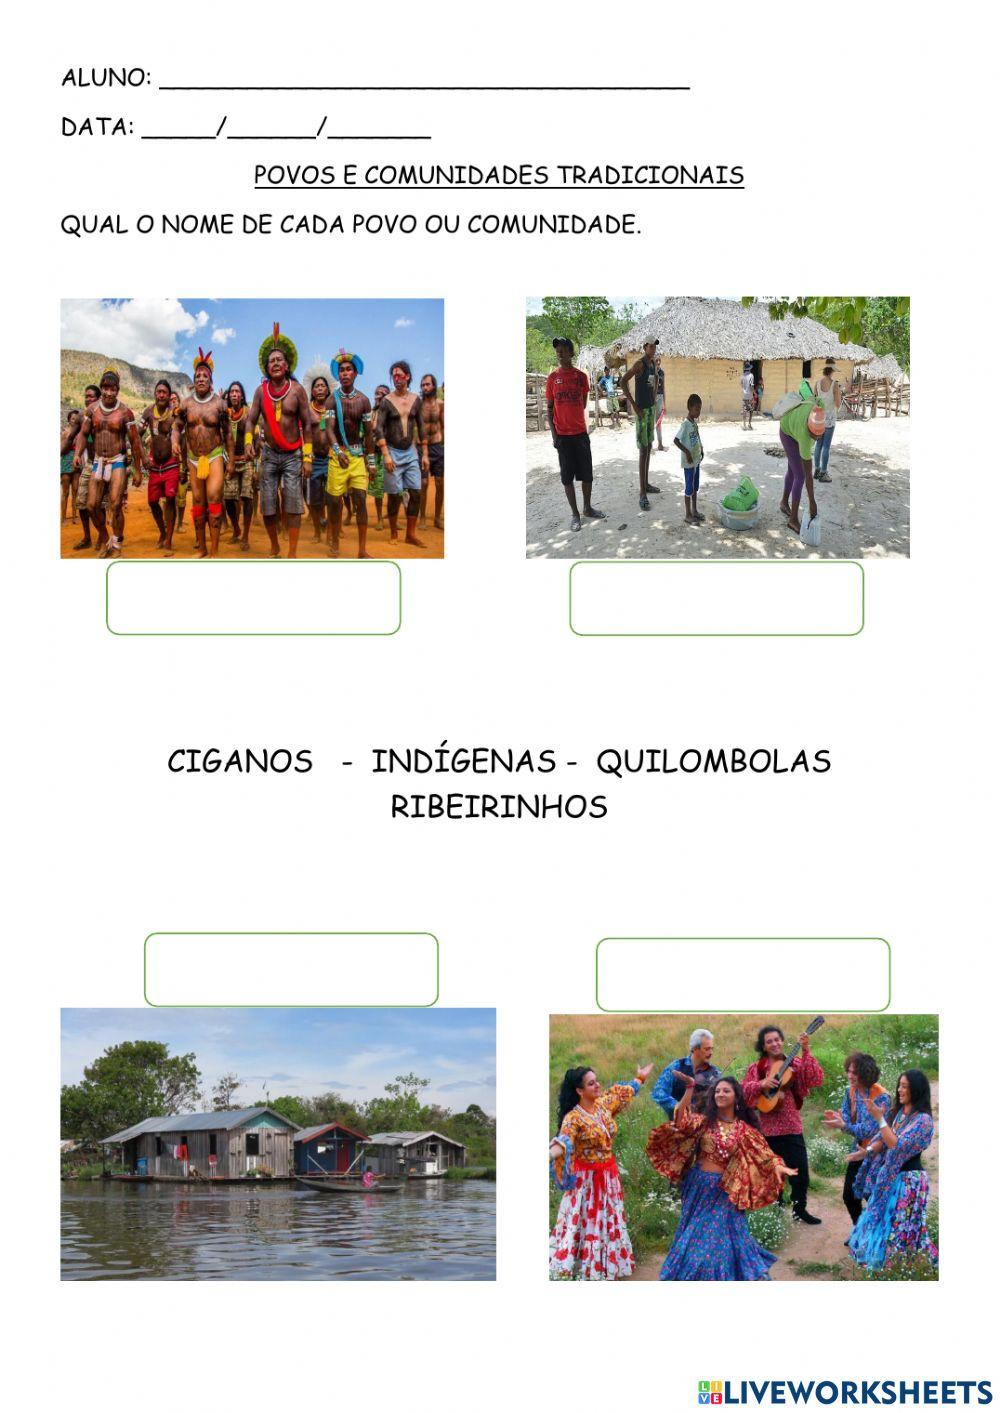 Povos e comunidades brasileiras